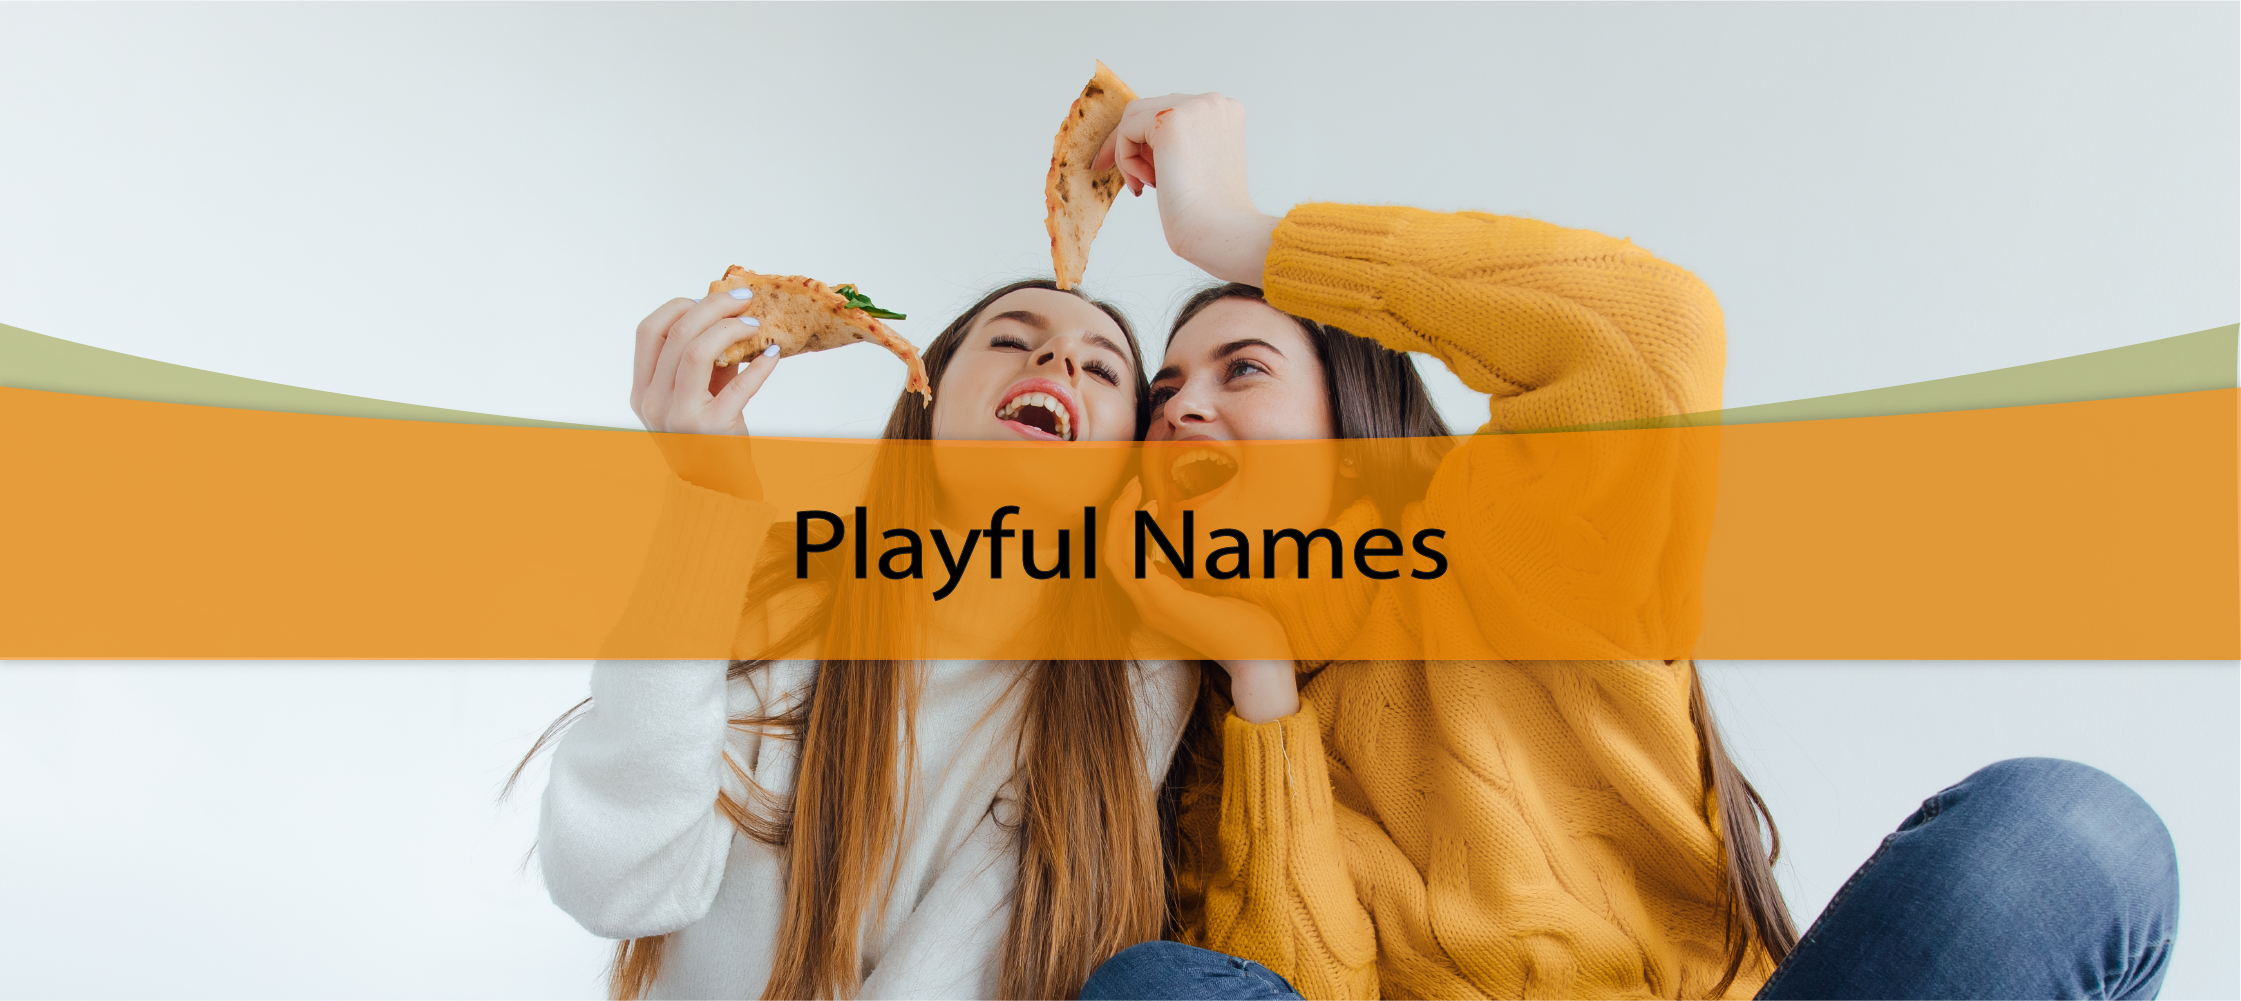 Playful Names